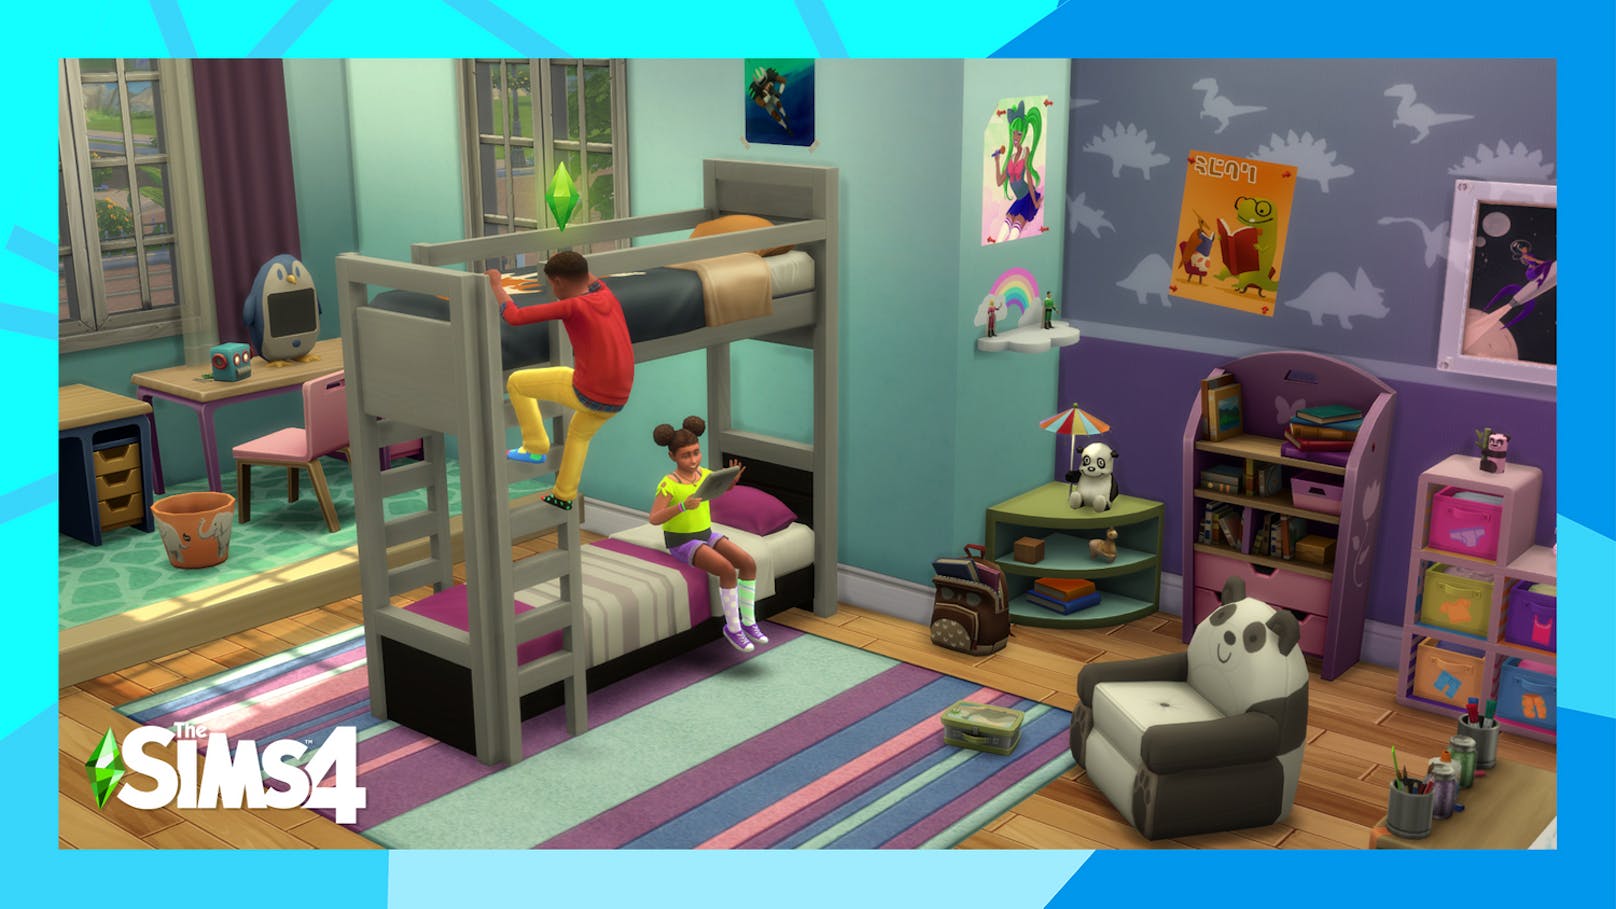 Etagenbetten ziehen nun kostenlos in "Die Sims 4" ein